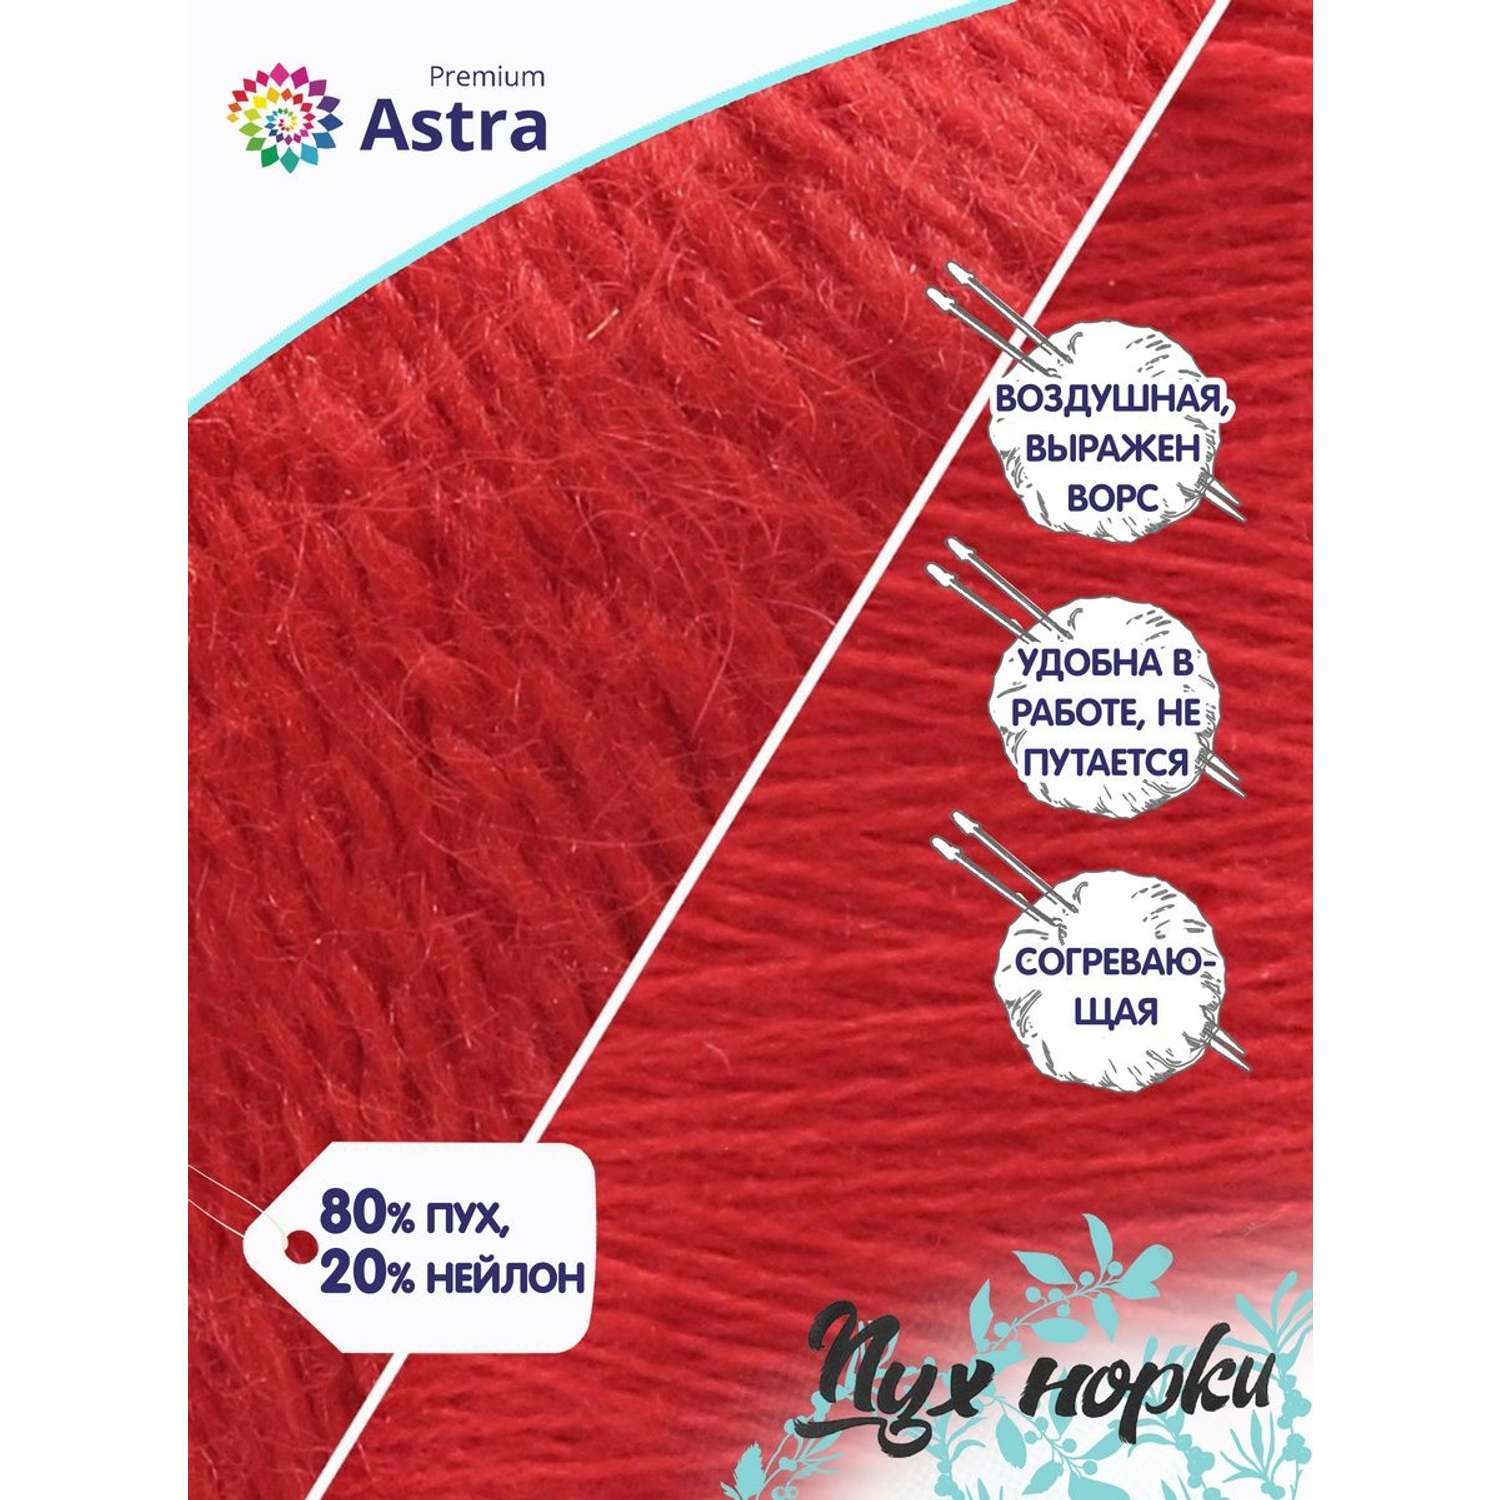 Пряжа Astra Premium Пух норки Mink yarn воздушная с ворсом 50 г 290 м 010 ярко-красный 1 моток - фото 2